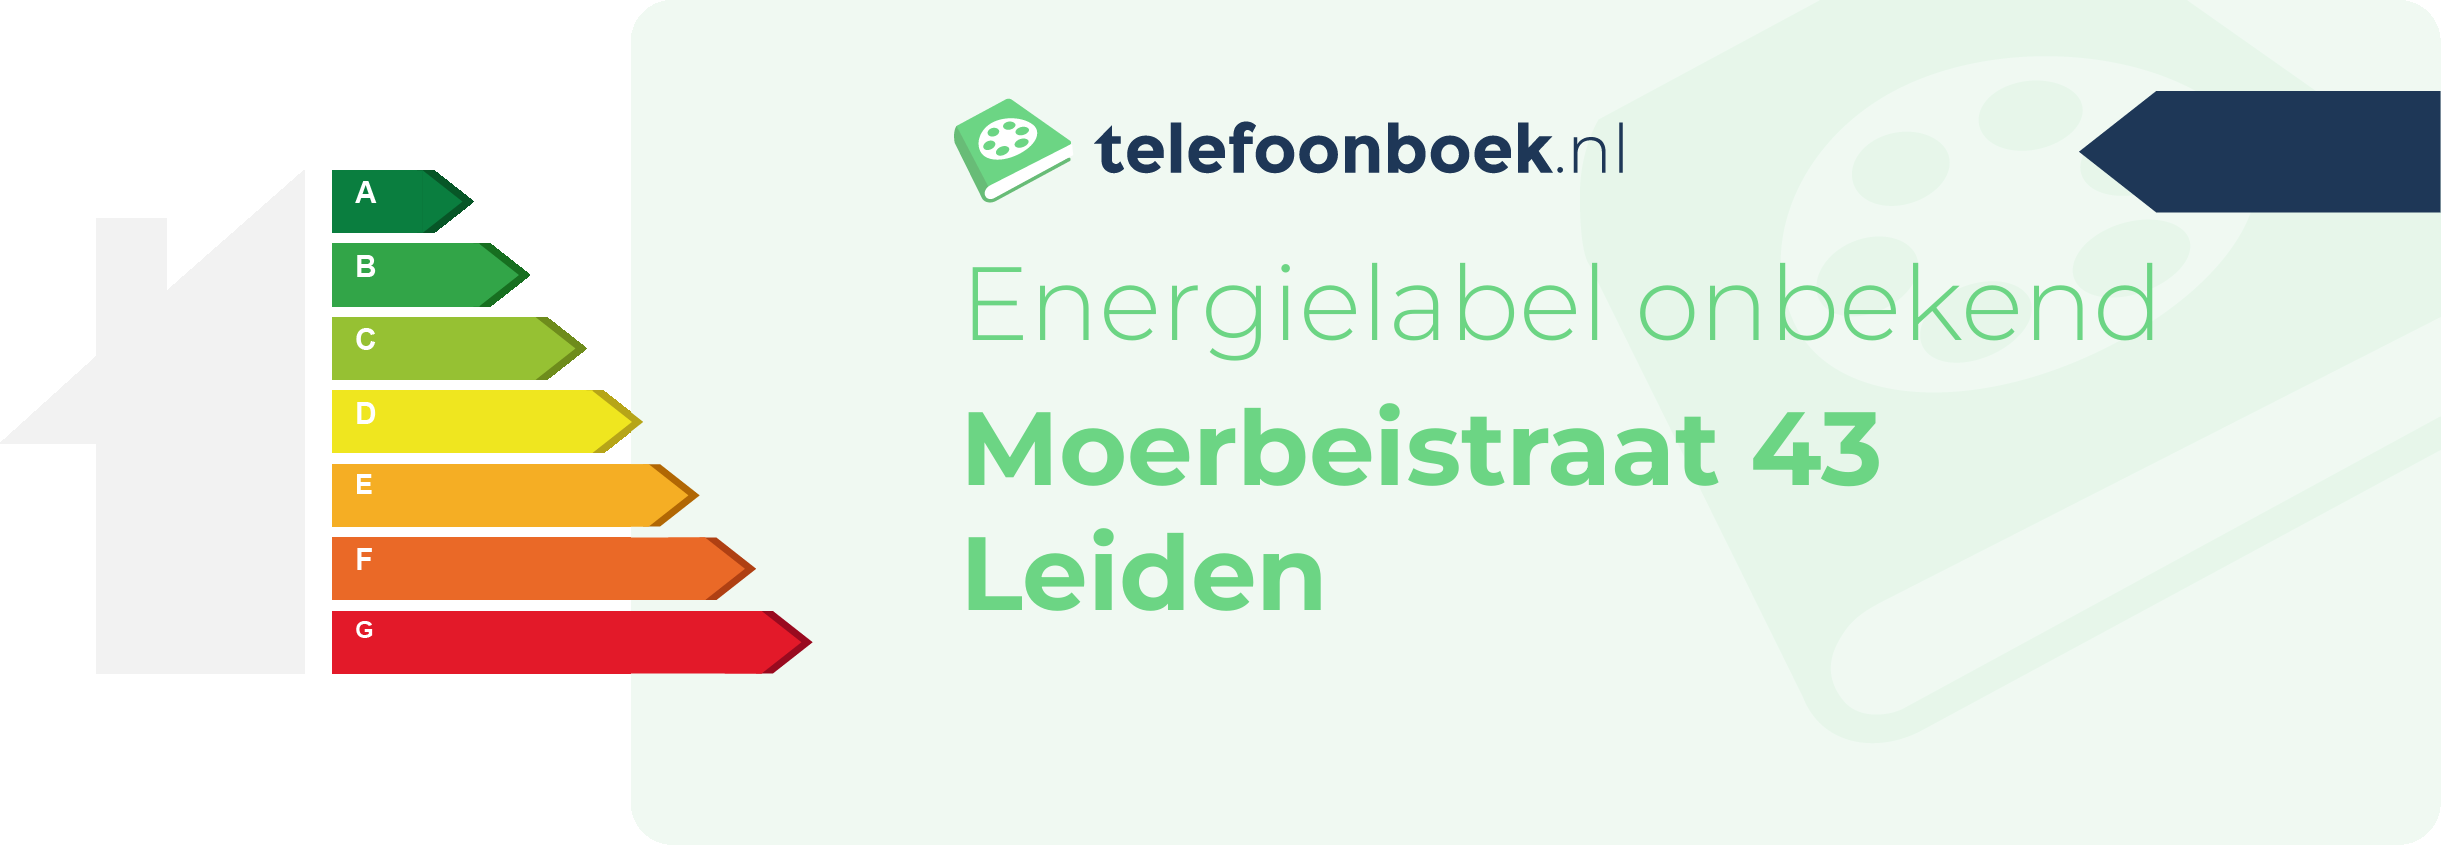 Energielabel Moerbeistraat 43 Leiden